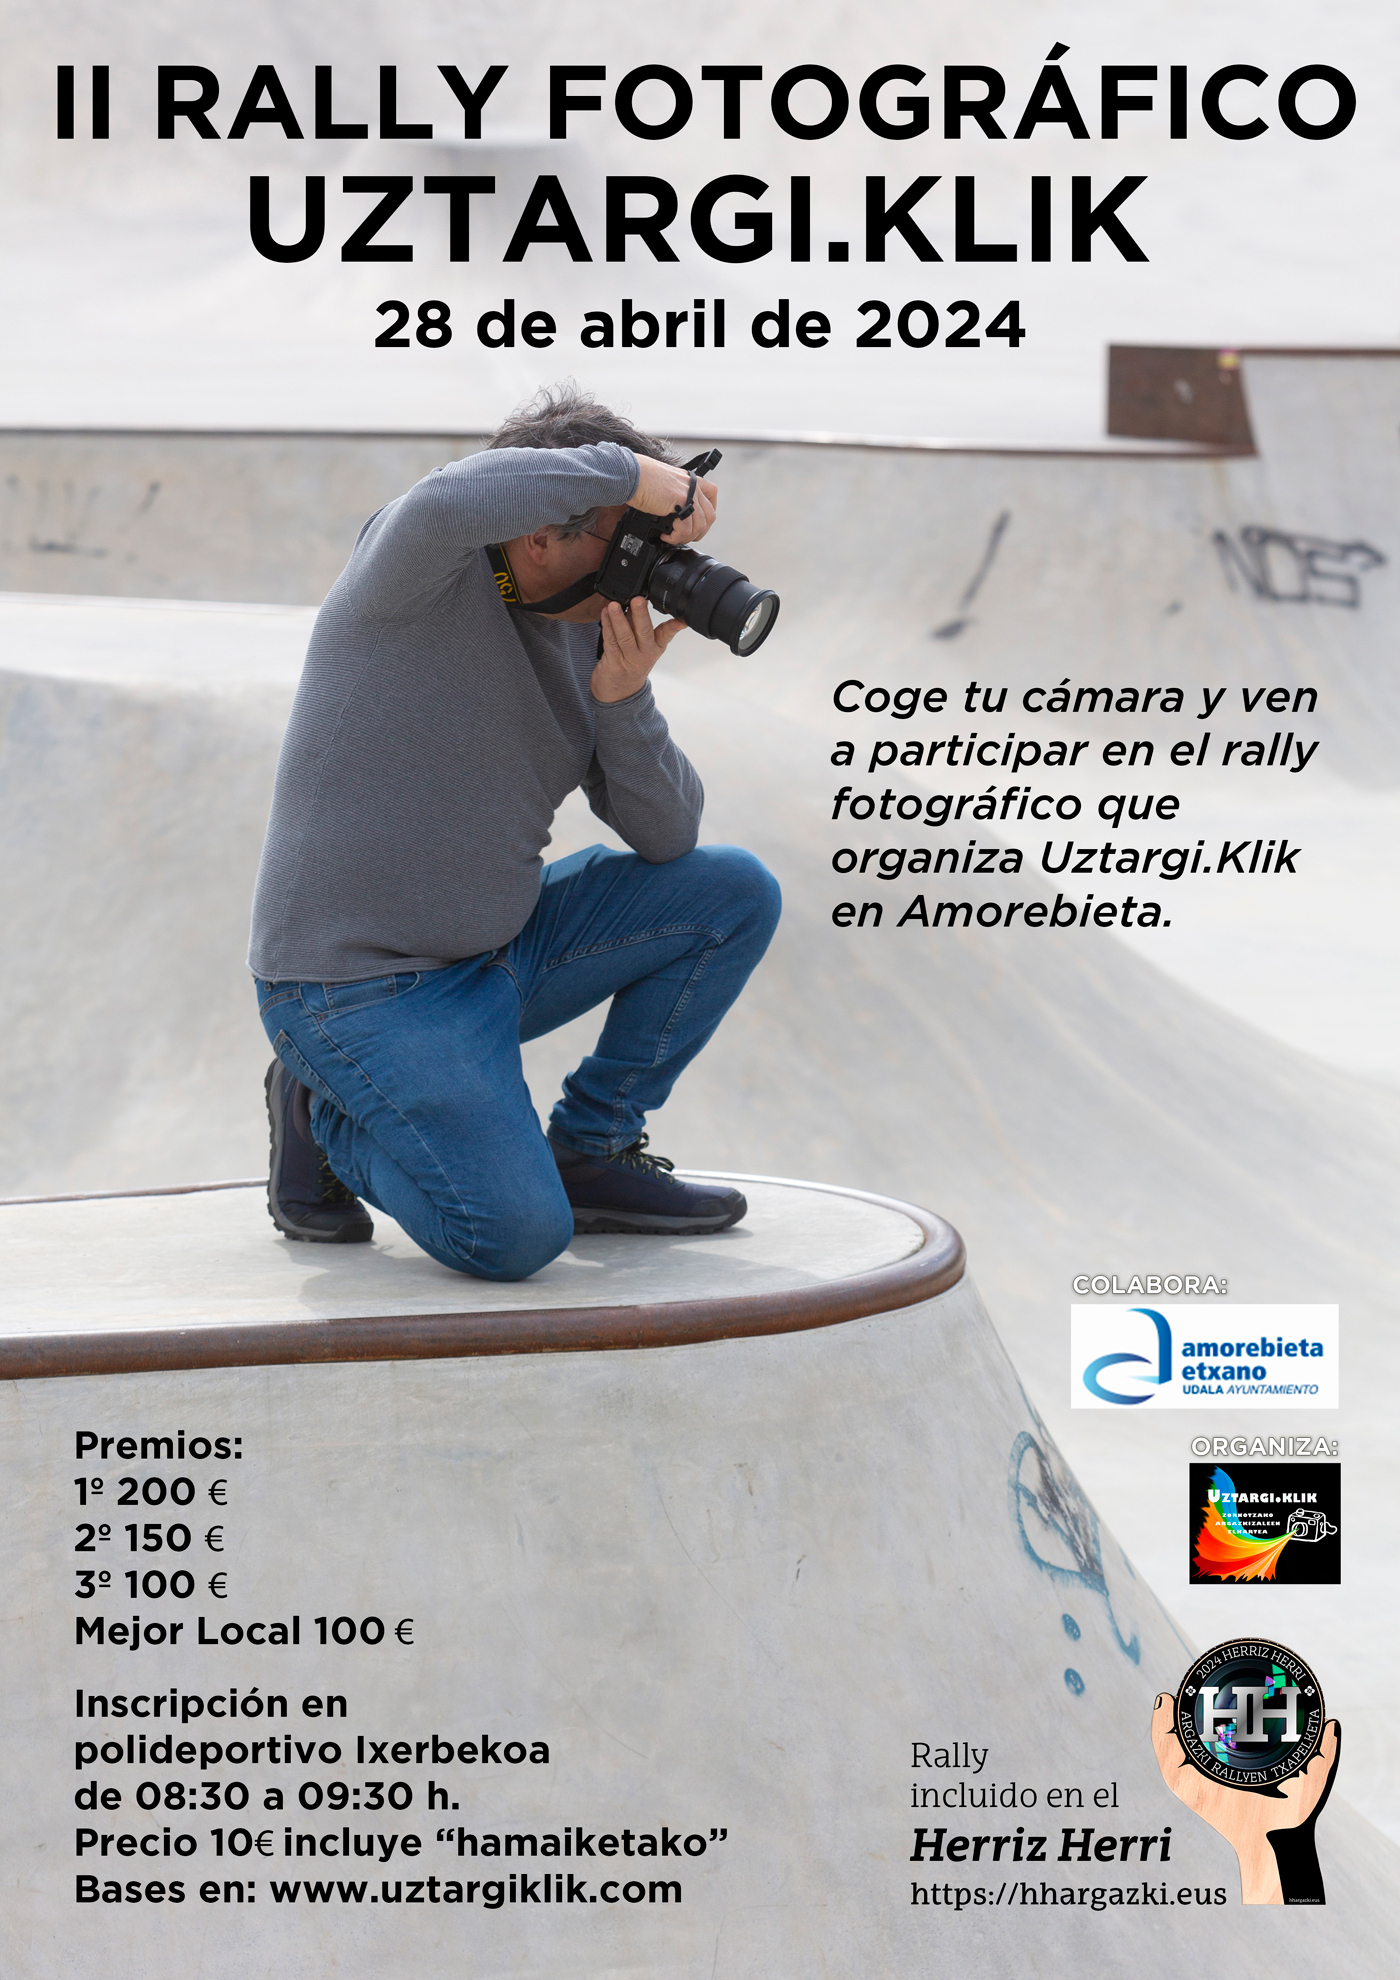 Ven a participar al rally fotográfico de Amorebieta el 28 de abril de 2024